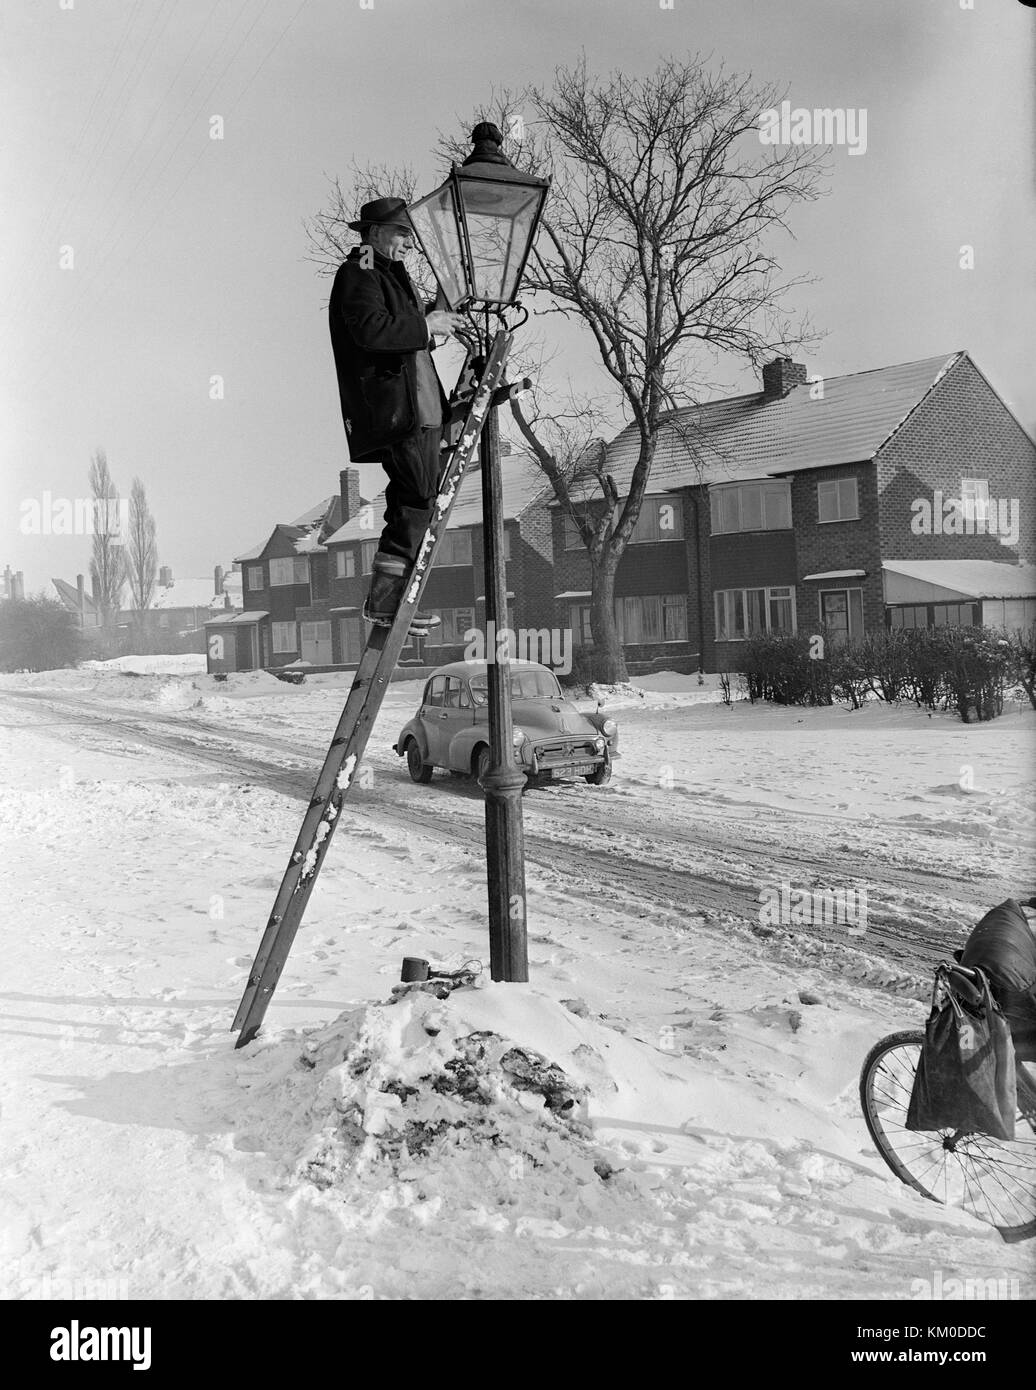 Bild am 22. Januar 1963 genommen, der Staffordshire Dorf Pelsall, zeigt einen Mann an der Spitze von einer Leiter, die Beleuchtung der gasbetriebenen Straßenlaternen. Ein Winter mit Schnee auf dem Boden und einen Morris Monor Auto im Hintergrund. Stockfoto